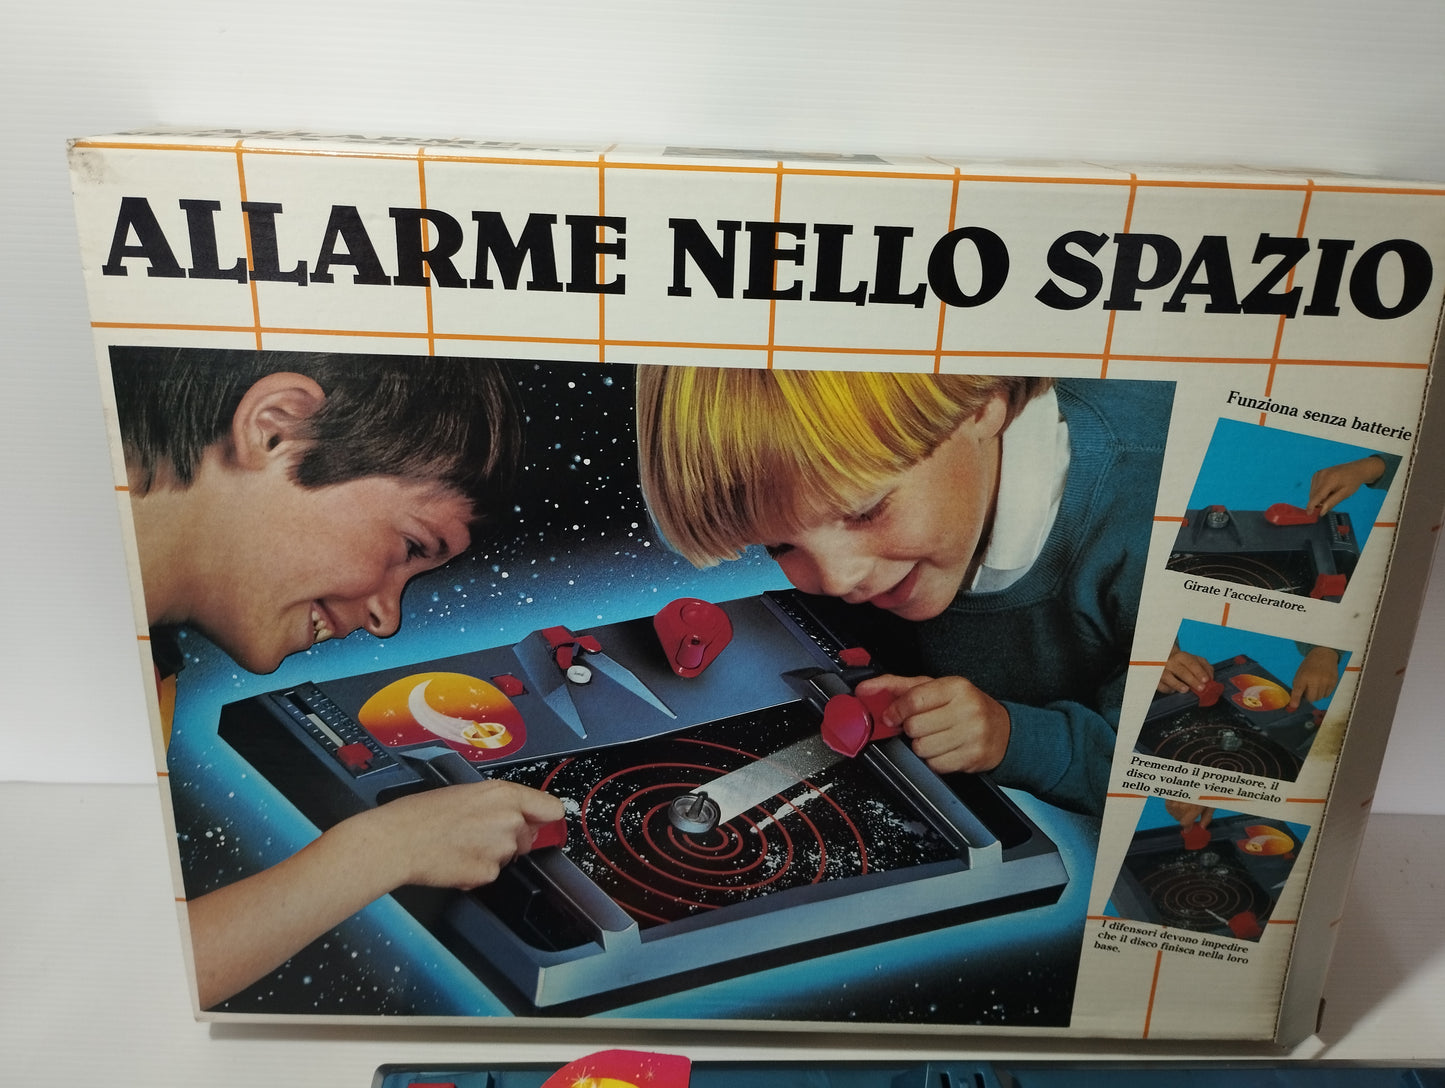 Gioco Allarme nello spazio della EG Editrice Giochi.
Originale anni 80.